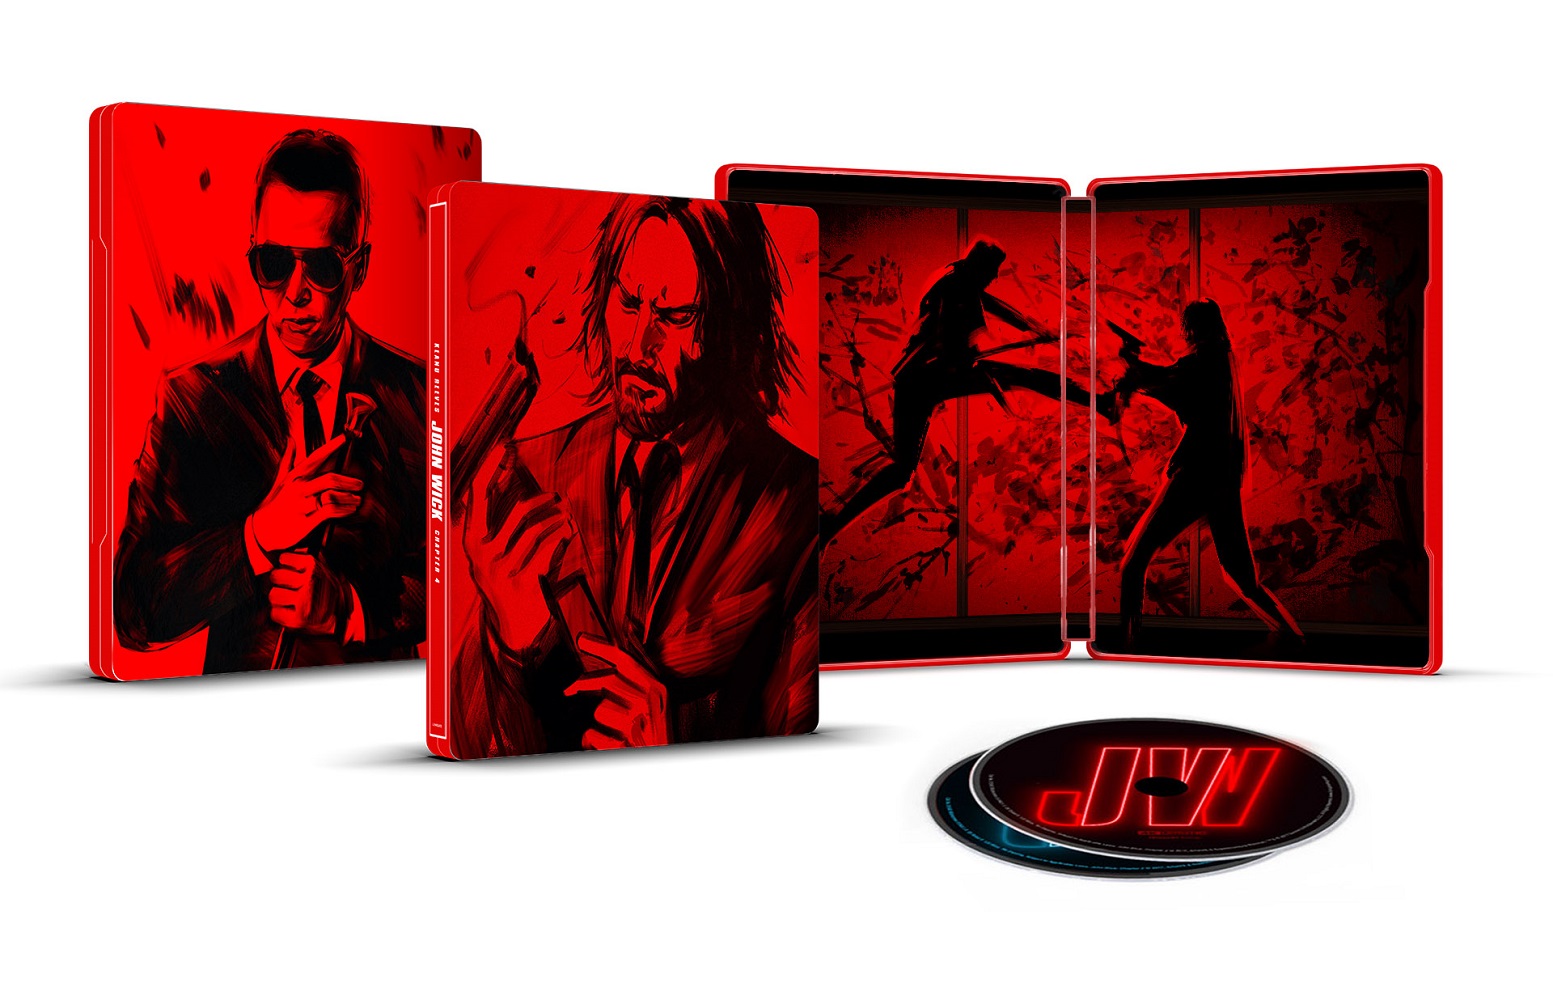 John Wick: Chapter 4 [Includes Digital Copy] [Blu-ray/DVD] [2023] - Best Buy